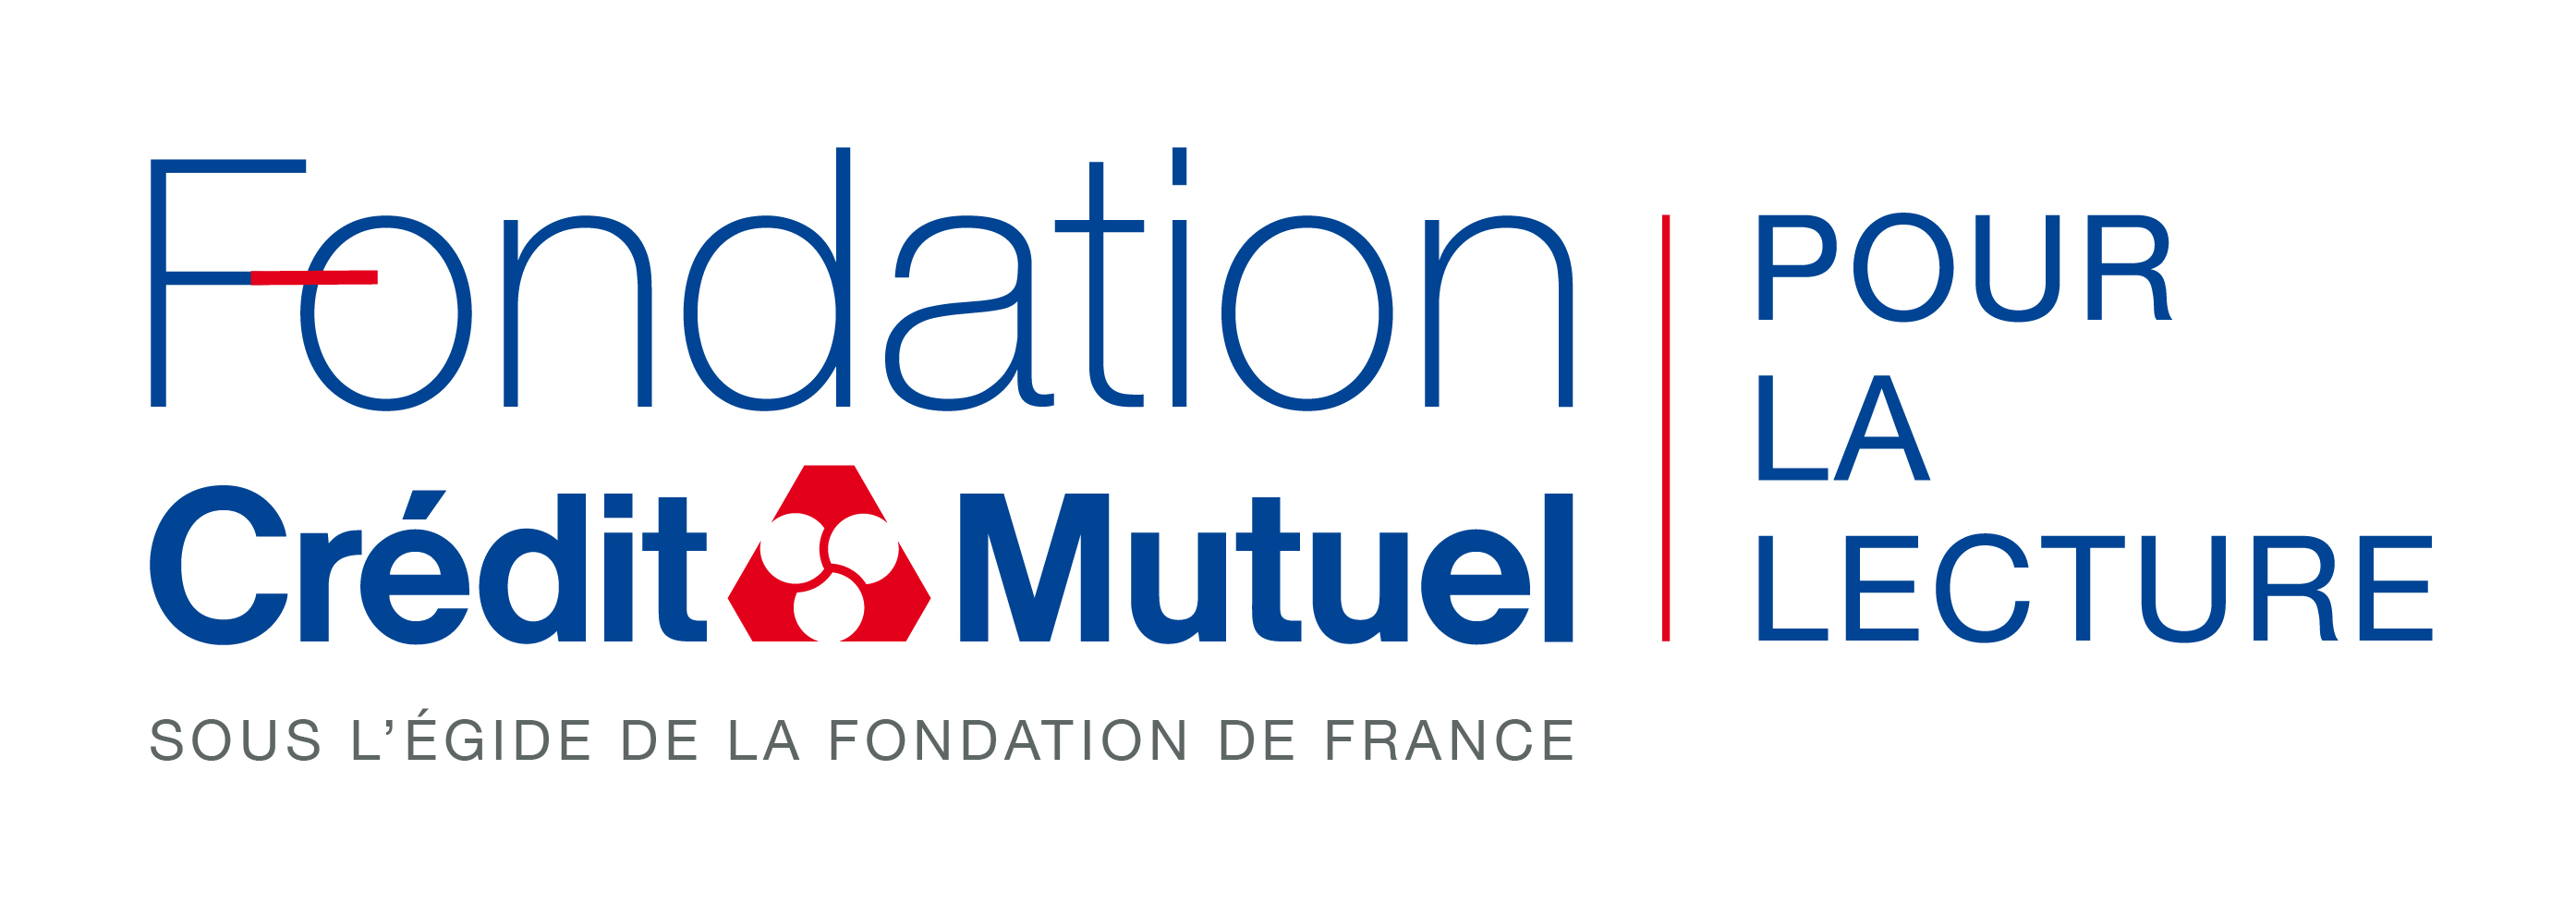 Logo : "FOndation Crédit Mutuel pour la lecture, sous l'égide de la Fondation de France"